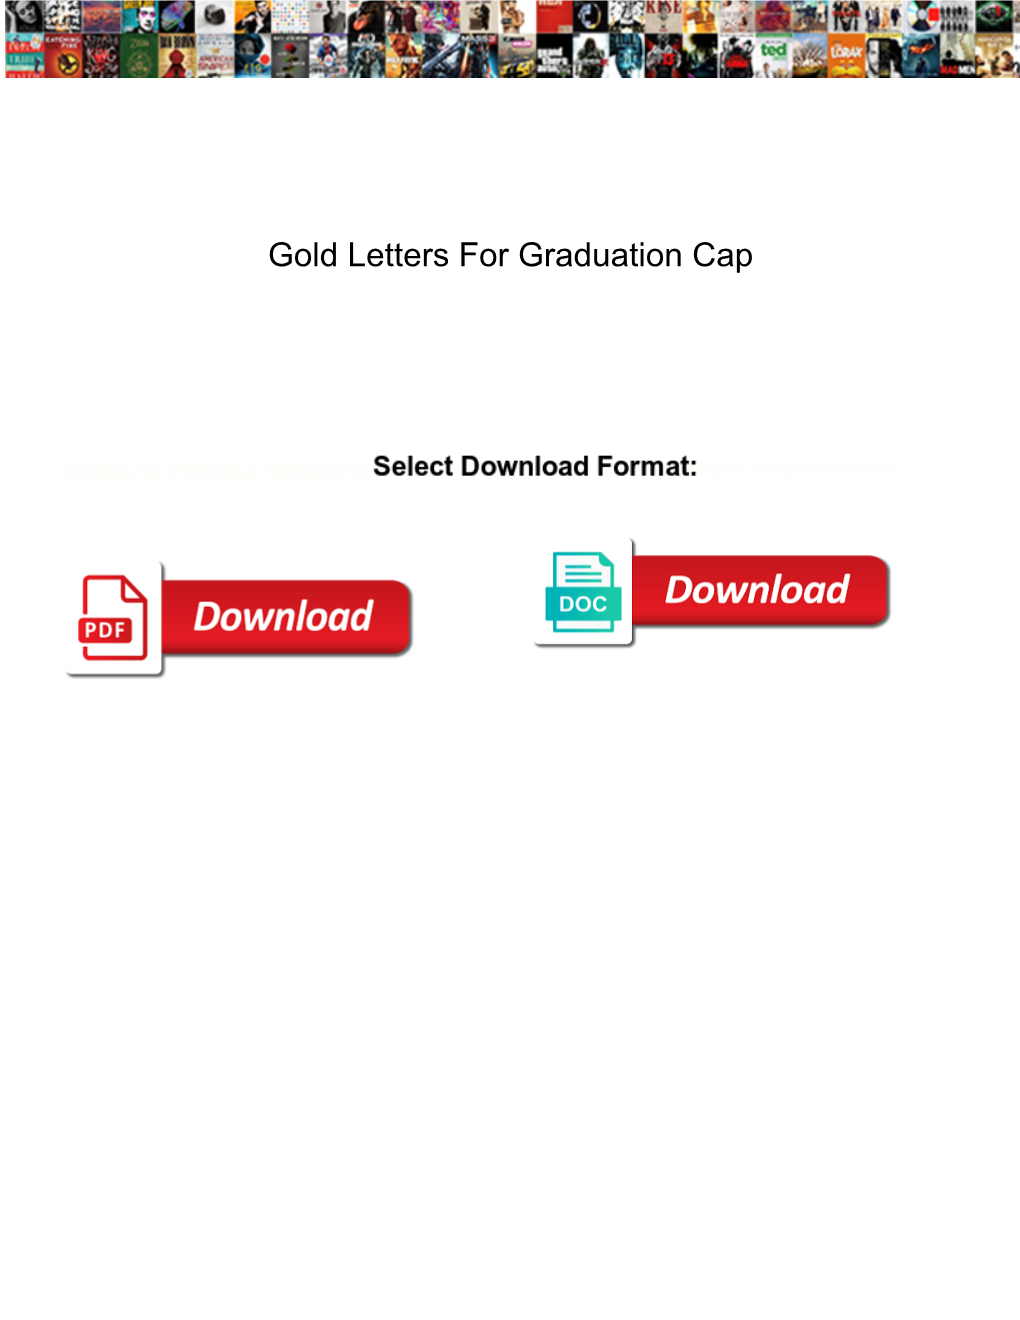 Gold Letters for Graduation Cap